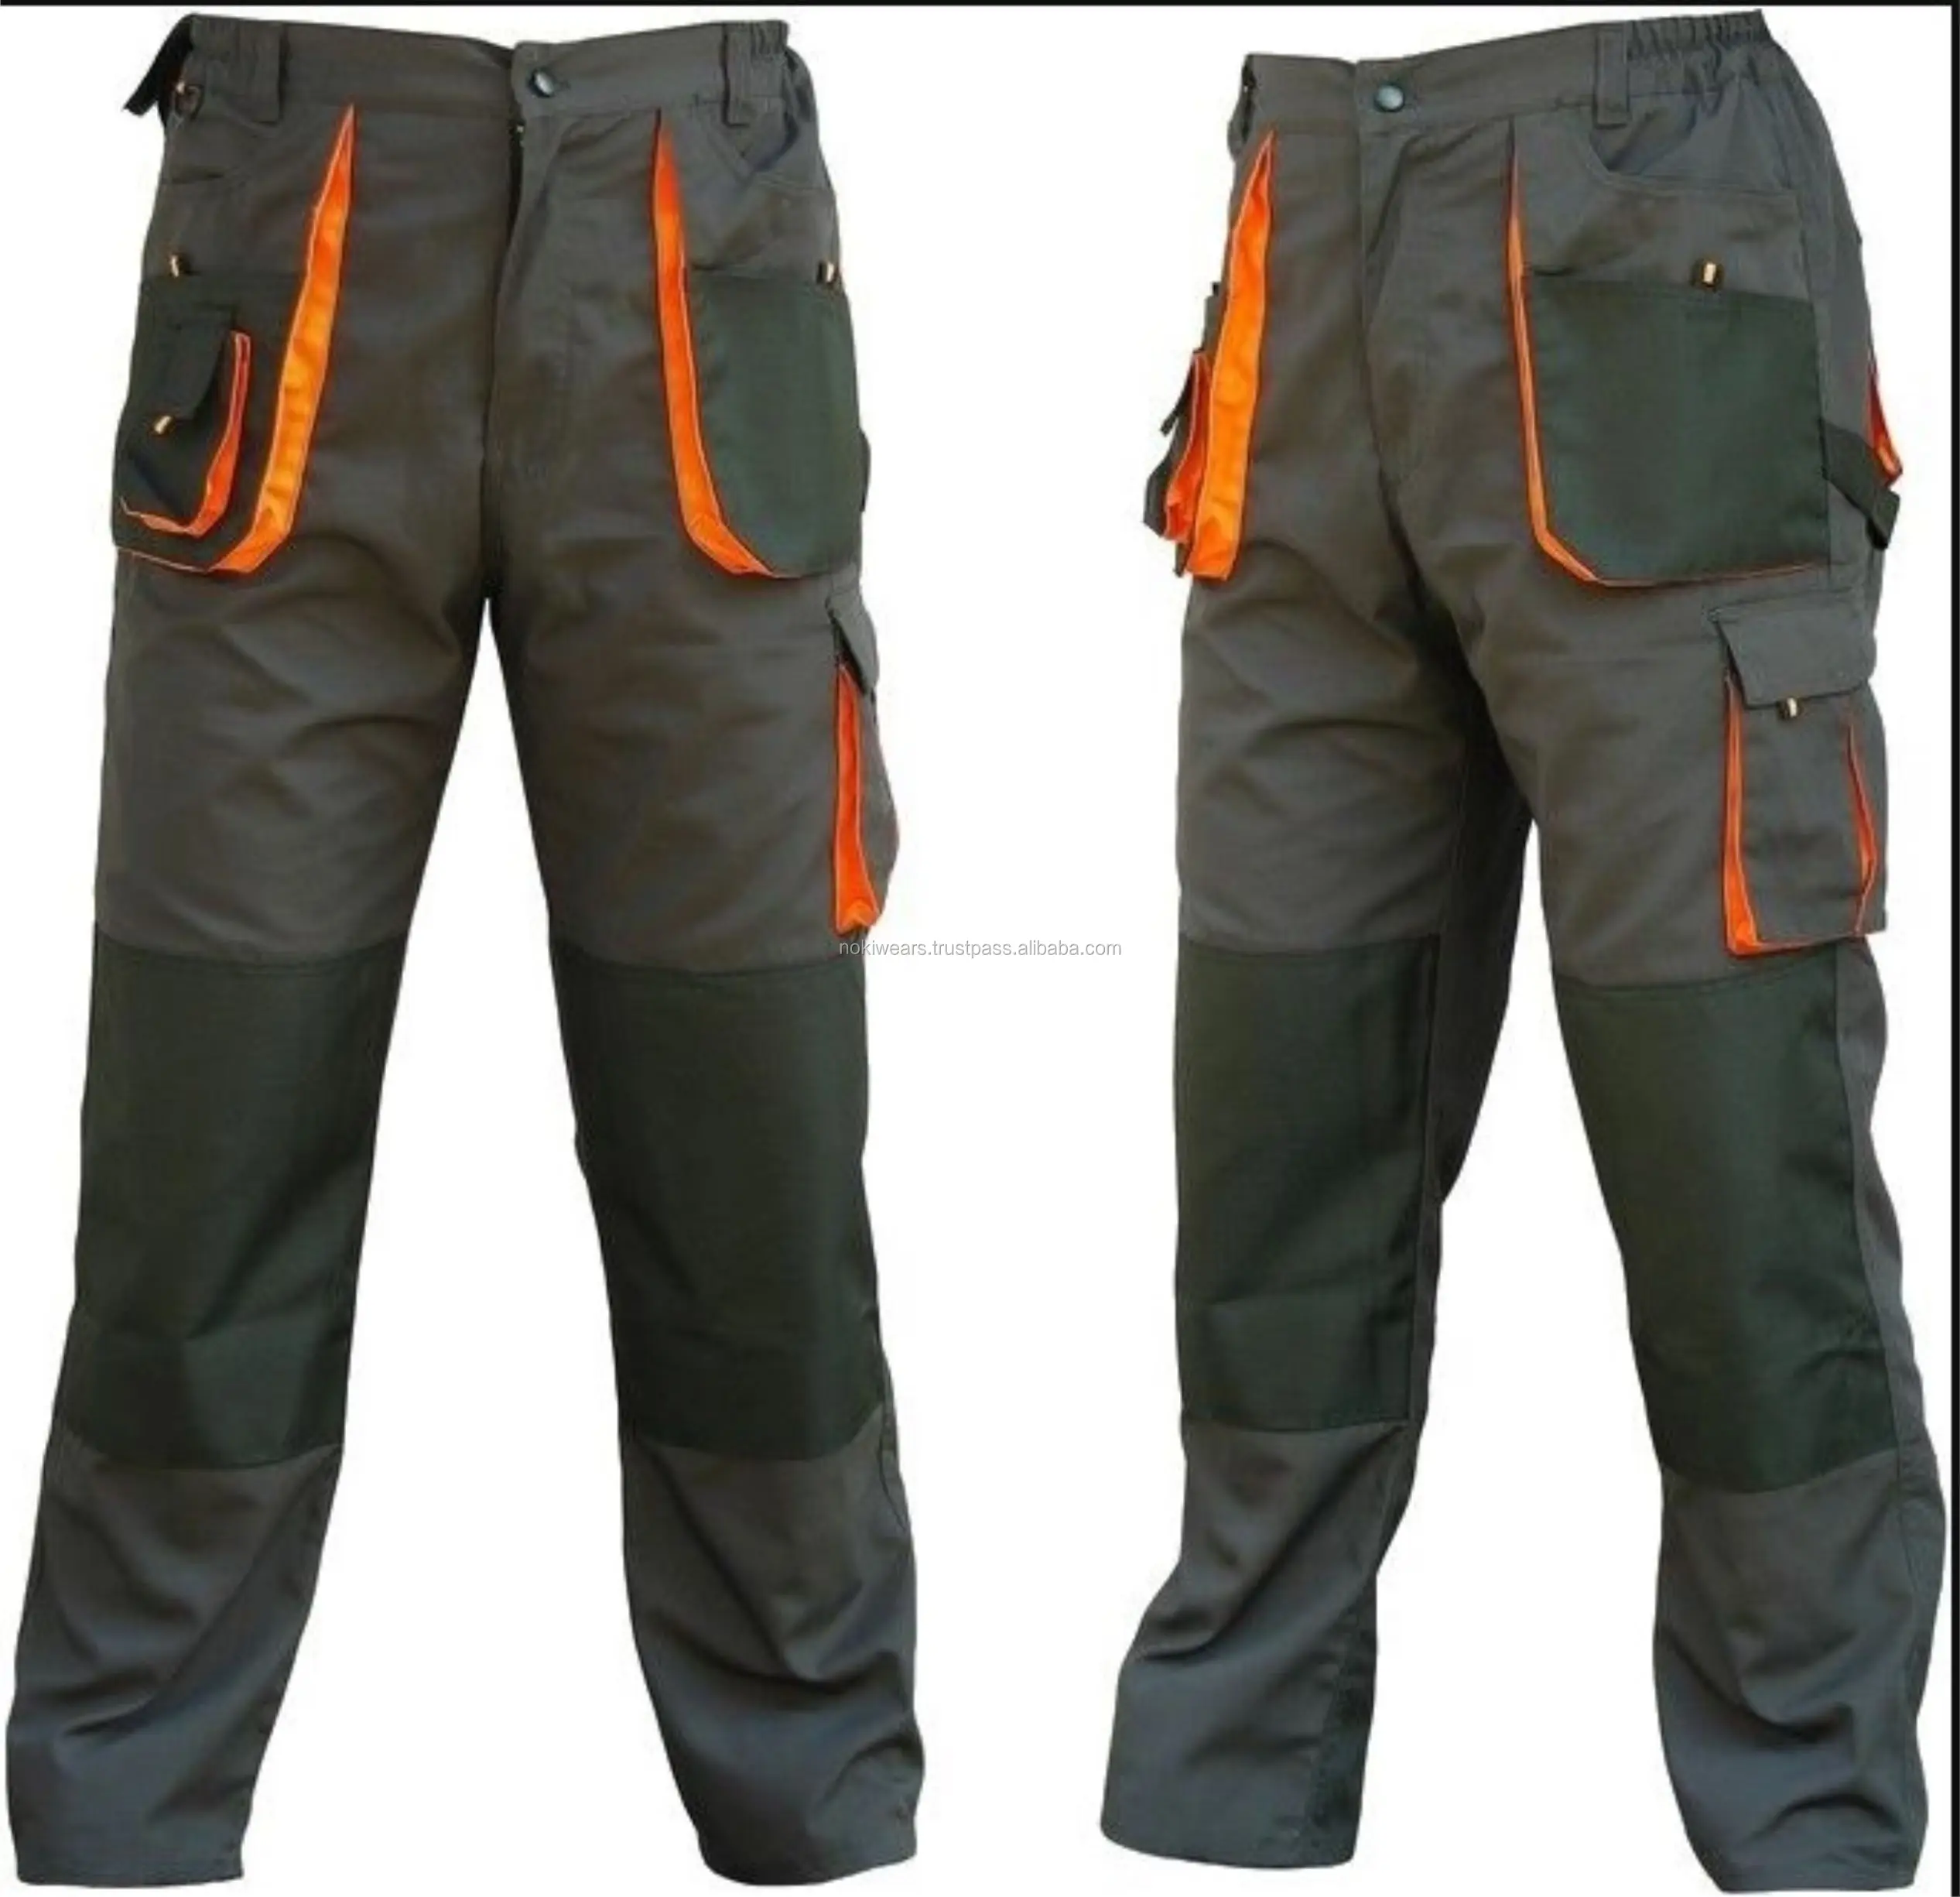 Combat Style Work Trousers Heavy Duty Knee Pad Cargo Multi Orange Pockets BELT 